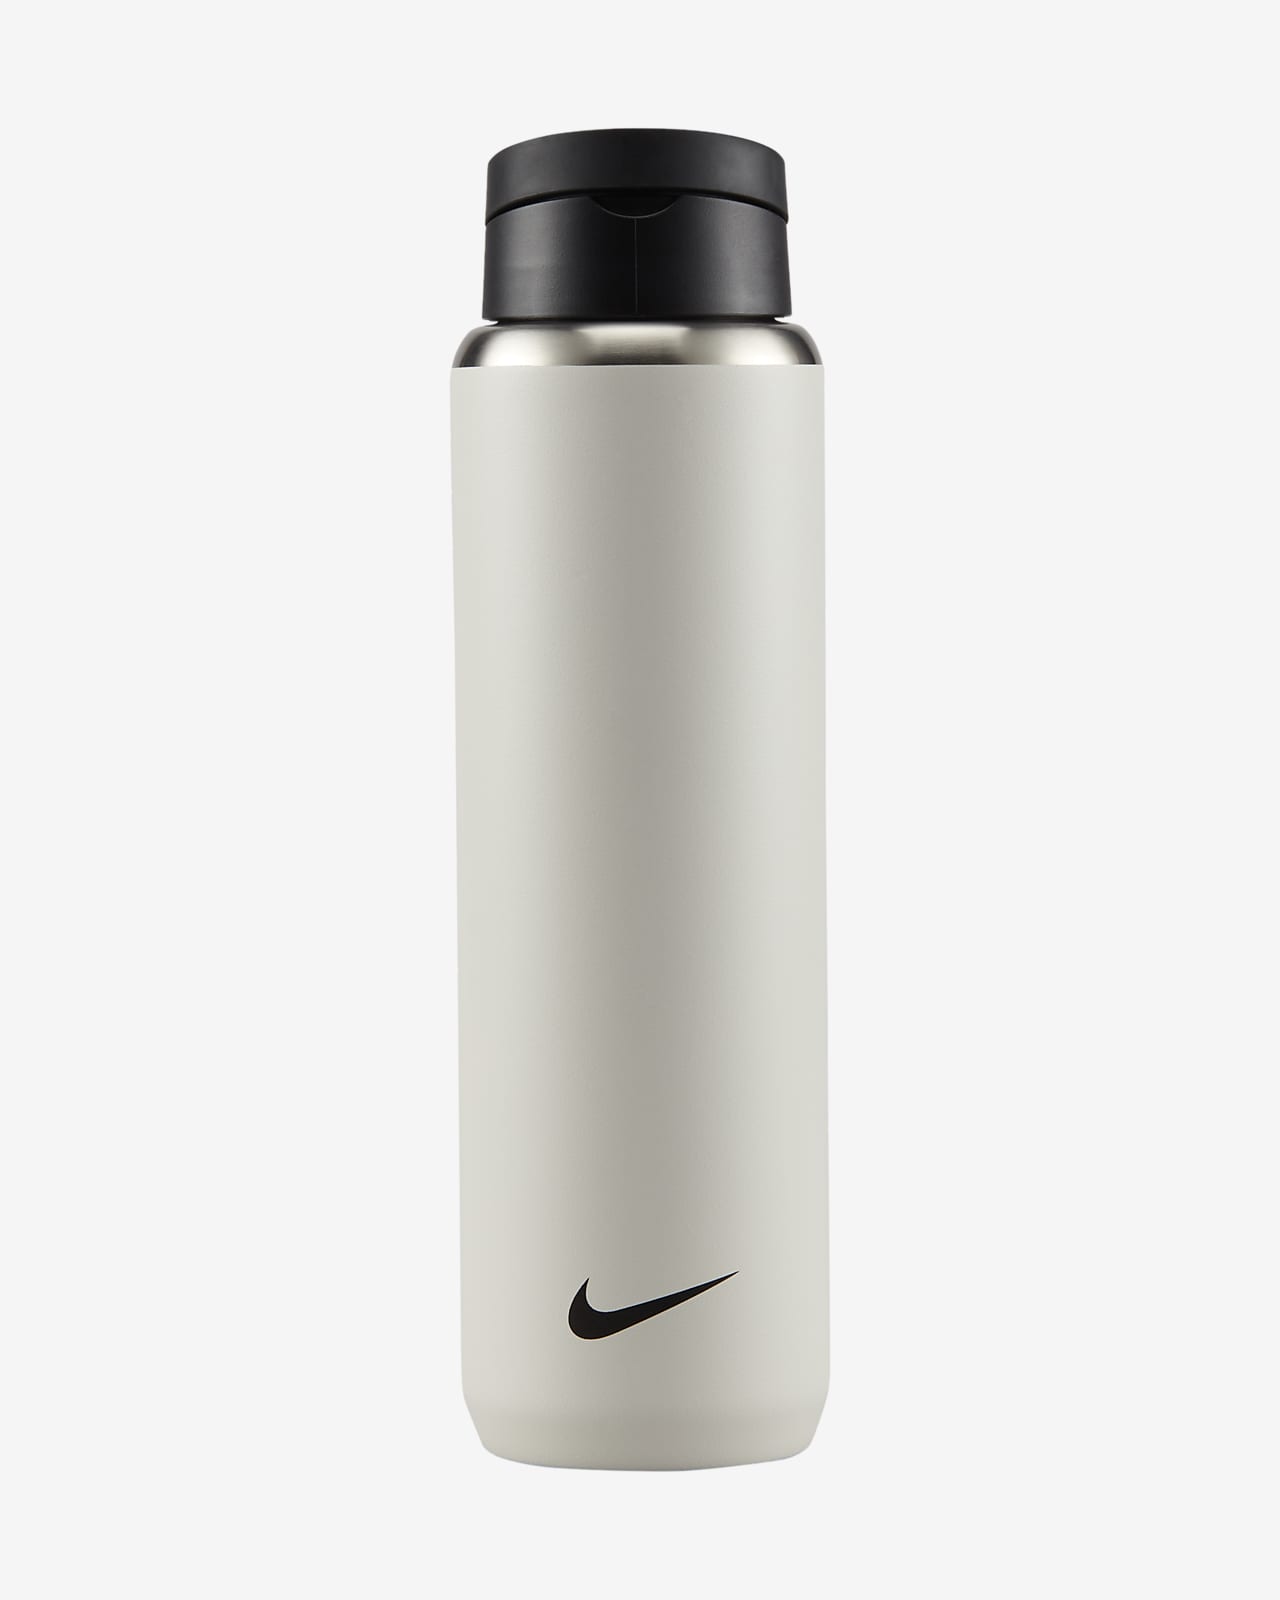 Nike Recharge Trinkflasche aus Edelstahl mit Trinkhalm (710 ml)